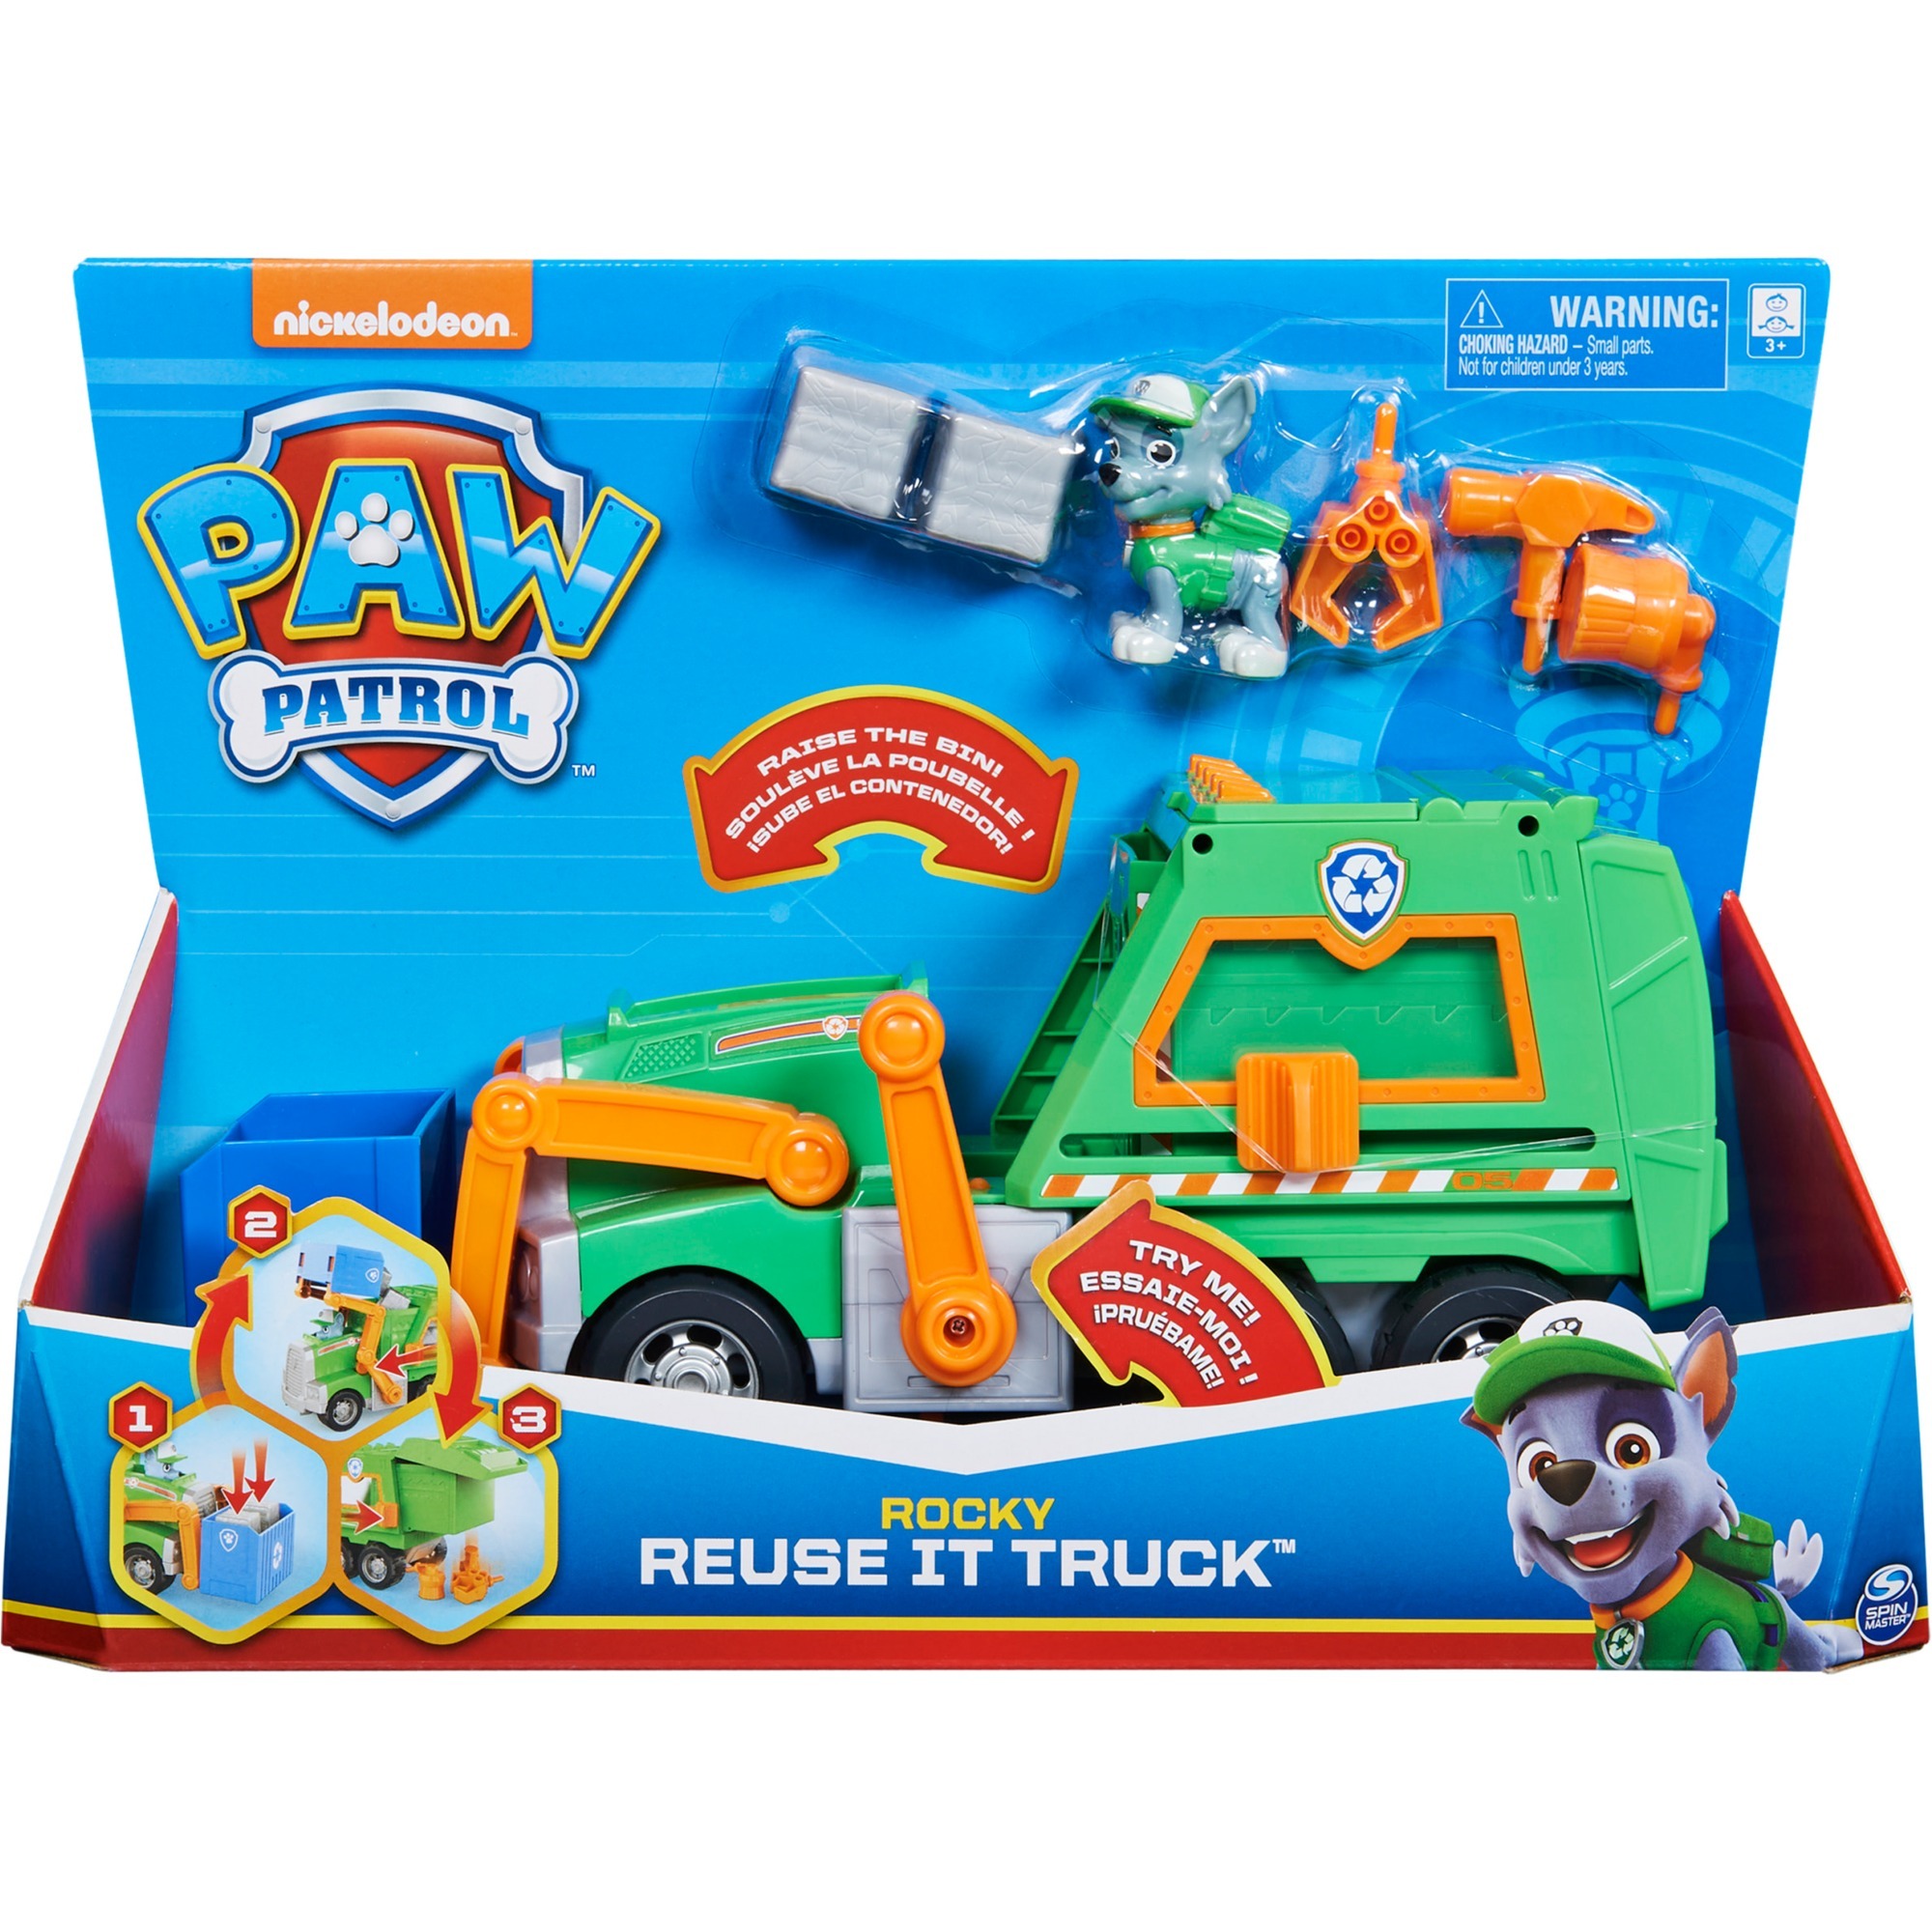 Image of Alternate - Paw Patrol Rockys Deluxe-Recycling-Truck, Spielfahrzeug online einkaufen bei Alternate